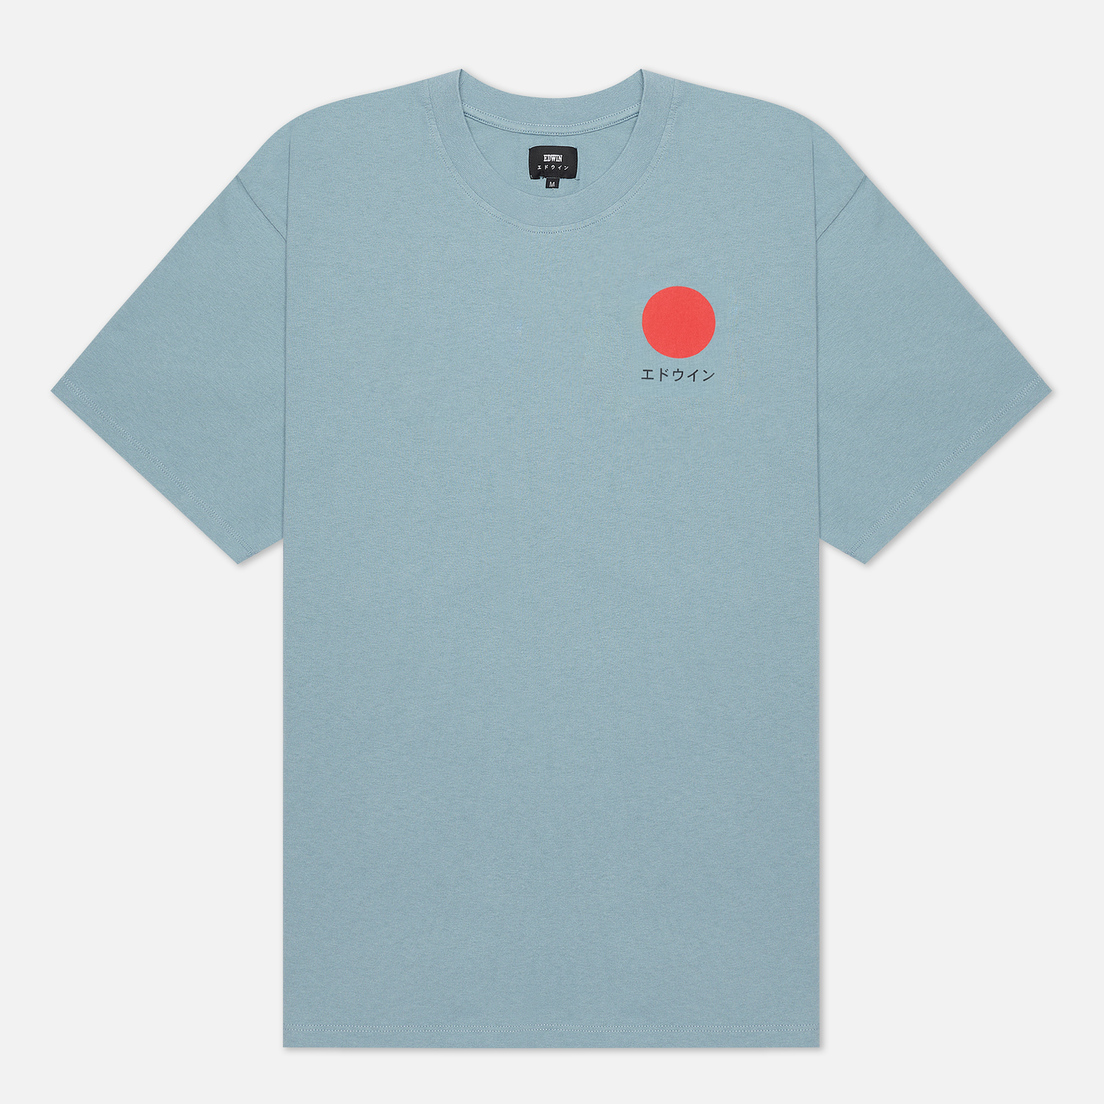 Edwin Мужская футболка Japanese Sun